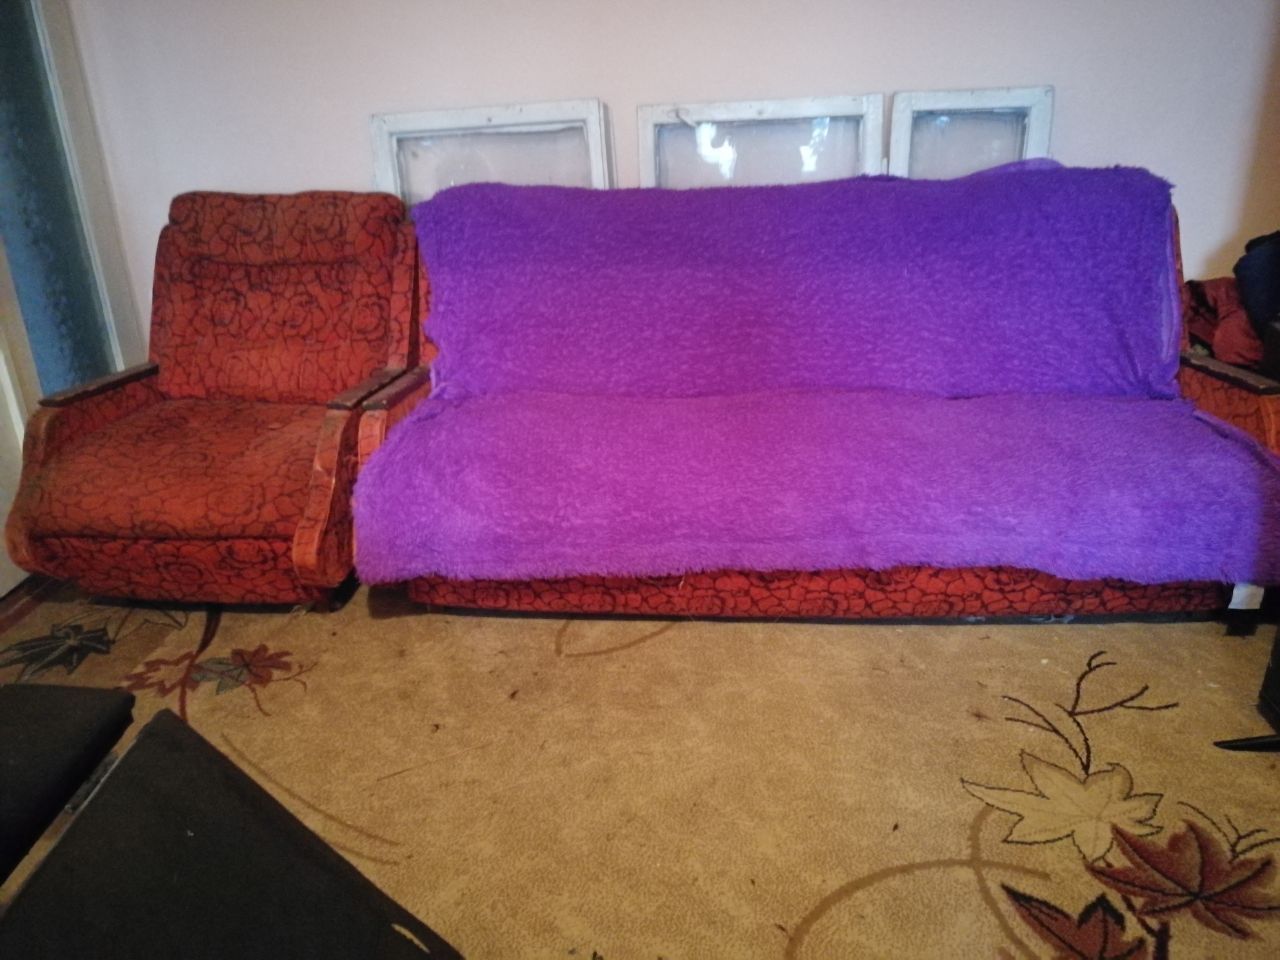 СРОЧНО ПРОДАМ!! Кровать, стенка, педикюрное кресло, диван и два кресла